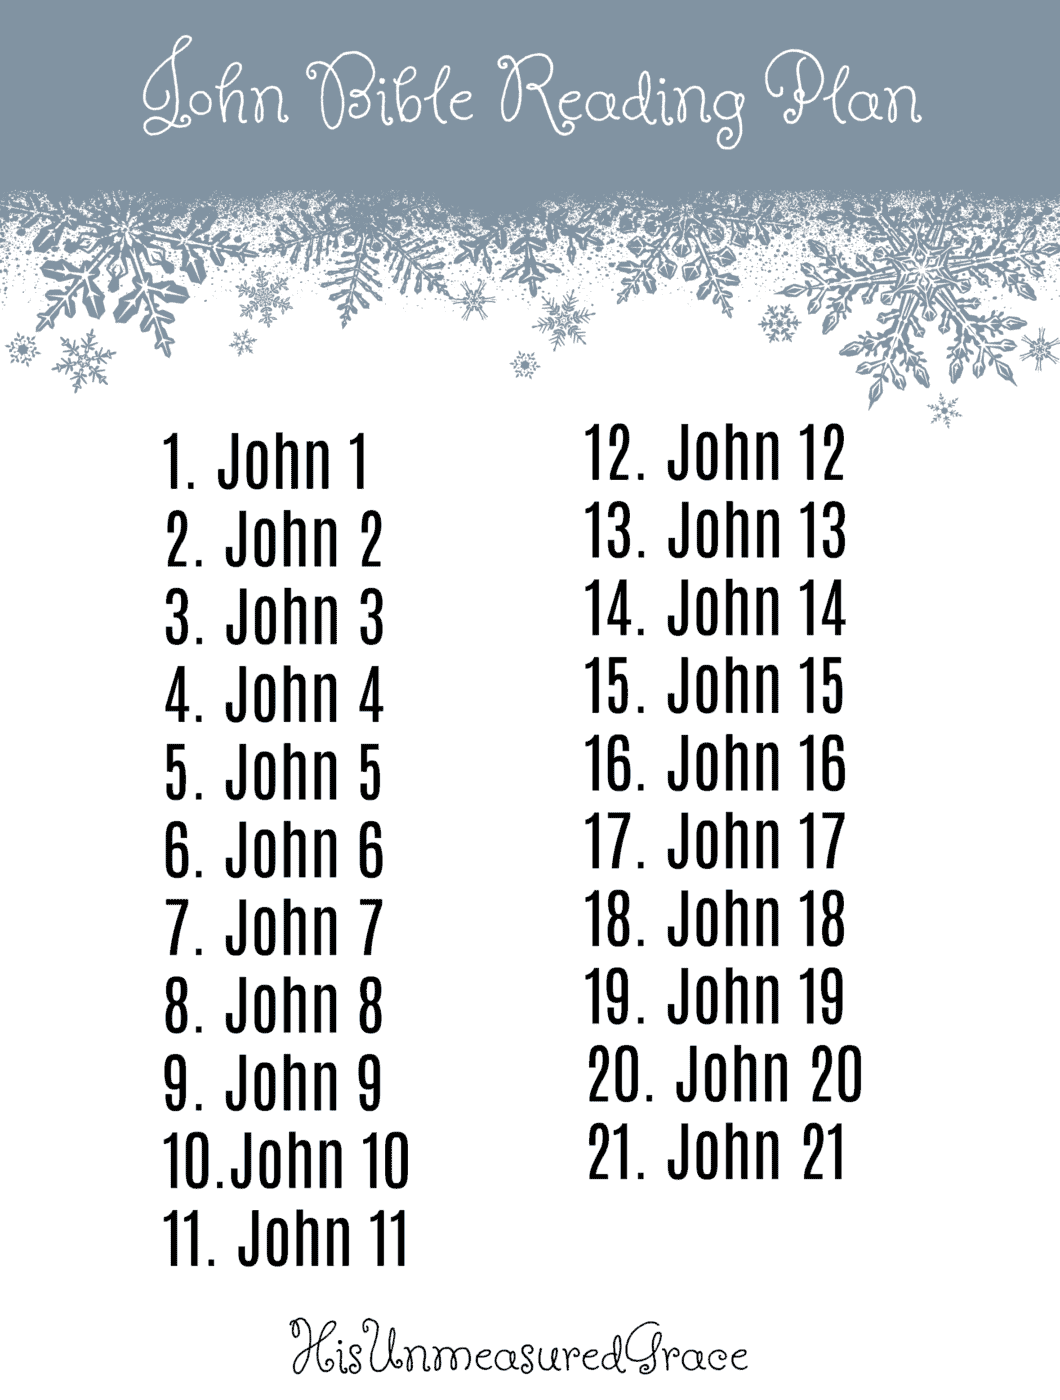 John Bible Reading Plan